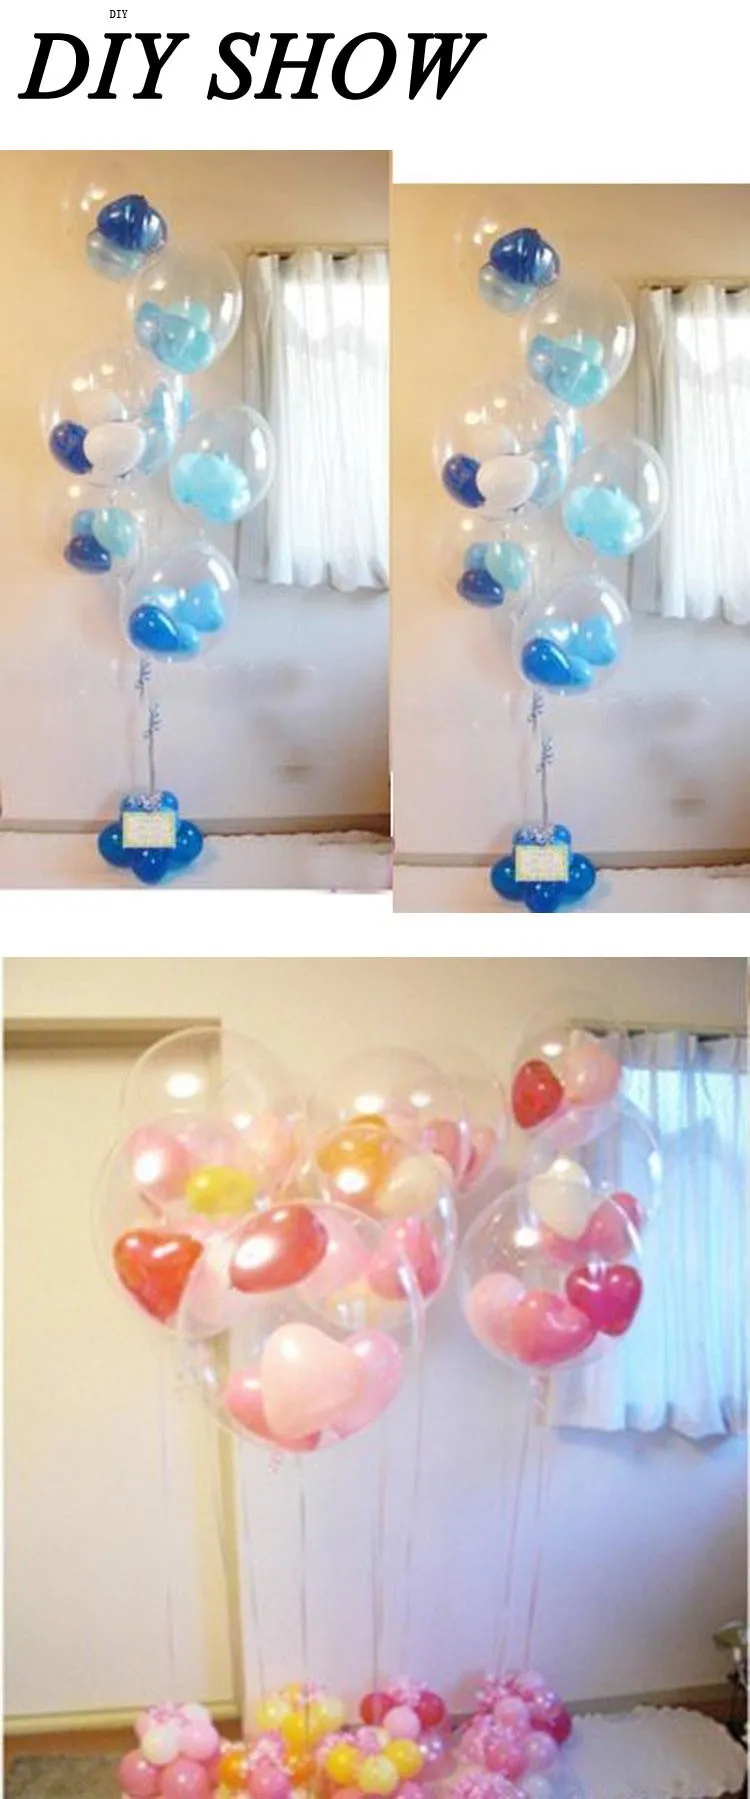 HAOCHU 50 шт./партия 12 дюймов прозрачные праздничные воздушные шары баллоны латексные гелиевые паллонцини для украшения для свадьбы дня рождения Детская Классическая Игрушка